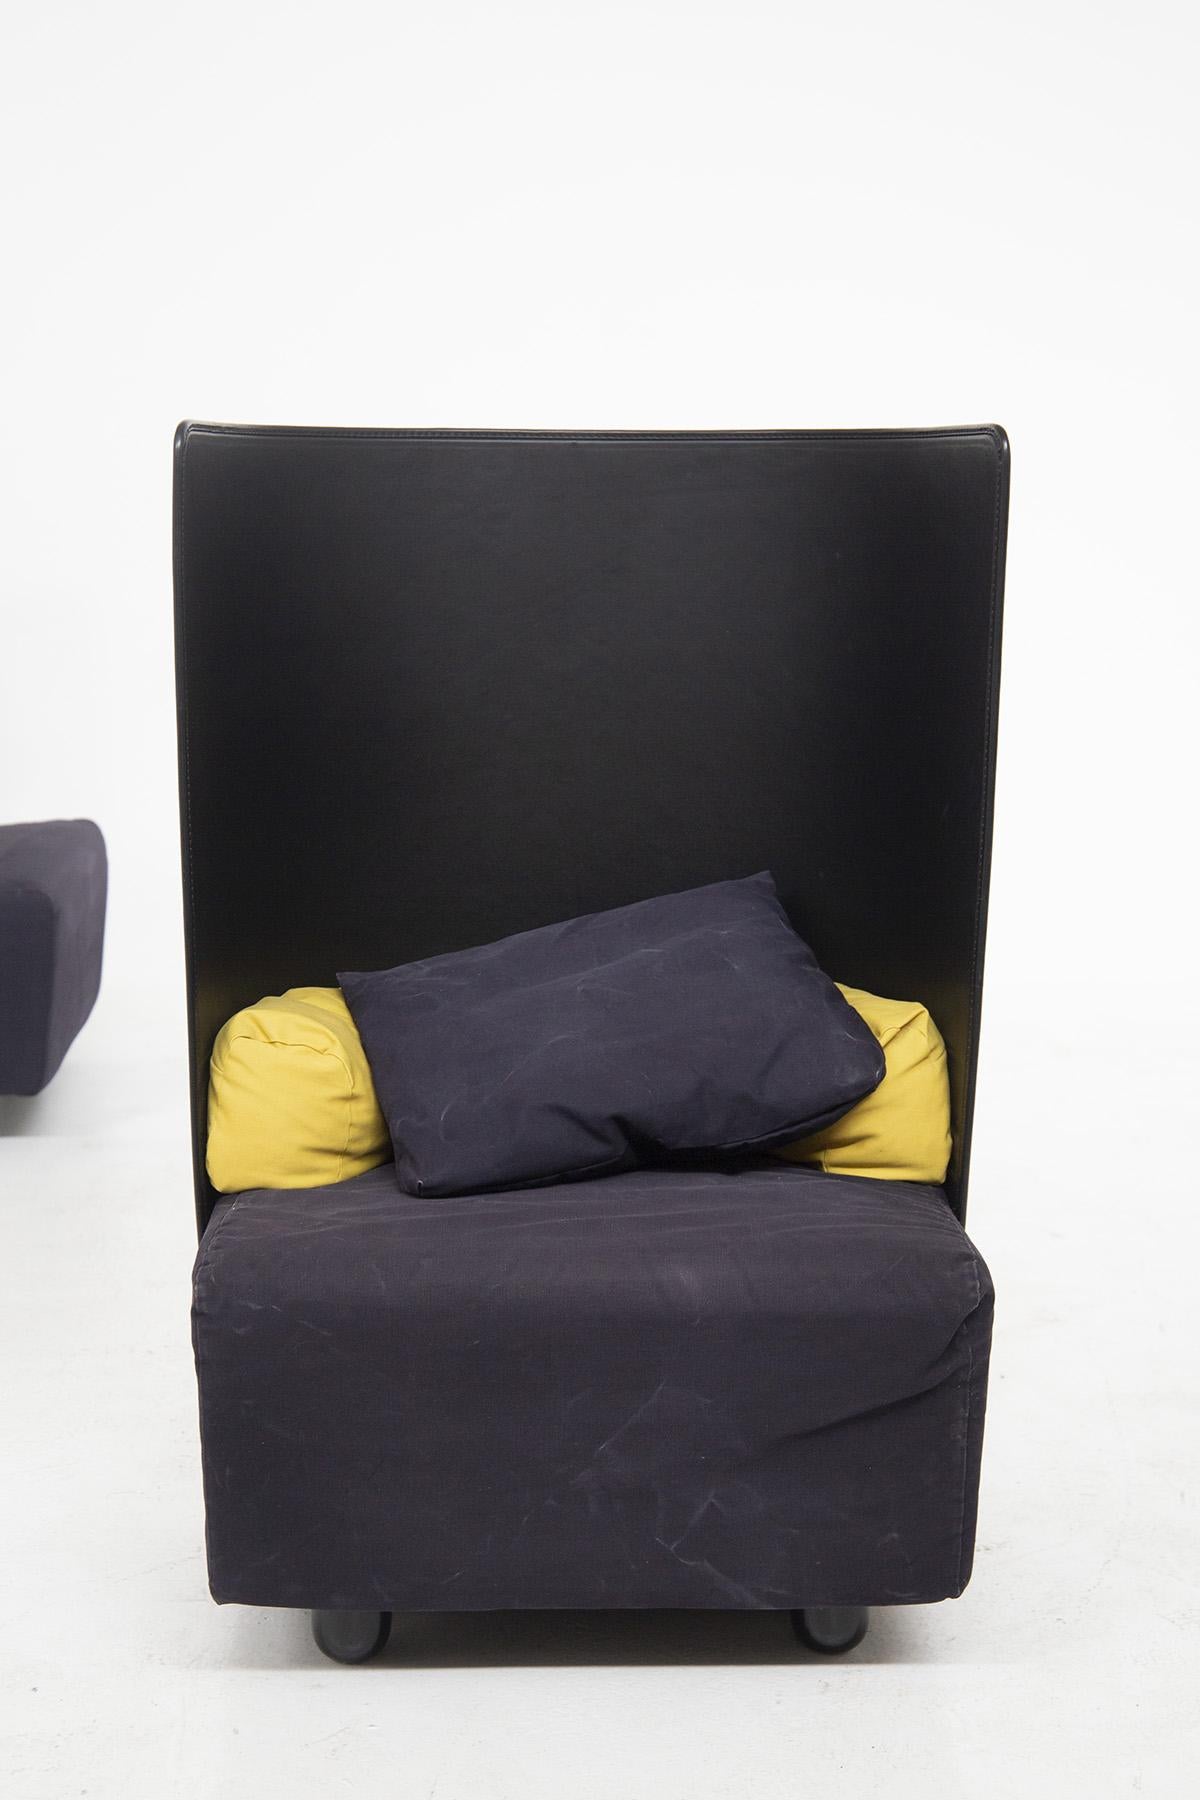 Jolie paire de fauteuils fabriqués dans les années 1980 par De Pas, D'urbino et Zanotta, de belle facture italienne.
Les fauteuils ont un dossier incurvé en matière plastique noire, très excentrique.
Il y a 4 pieds de support cylindriques, également